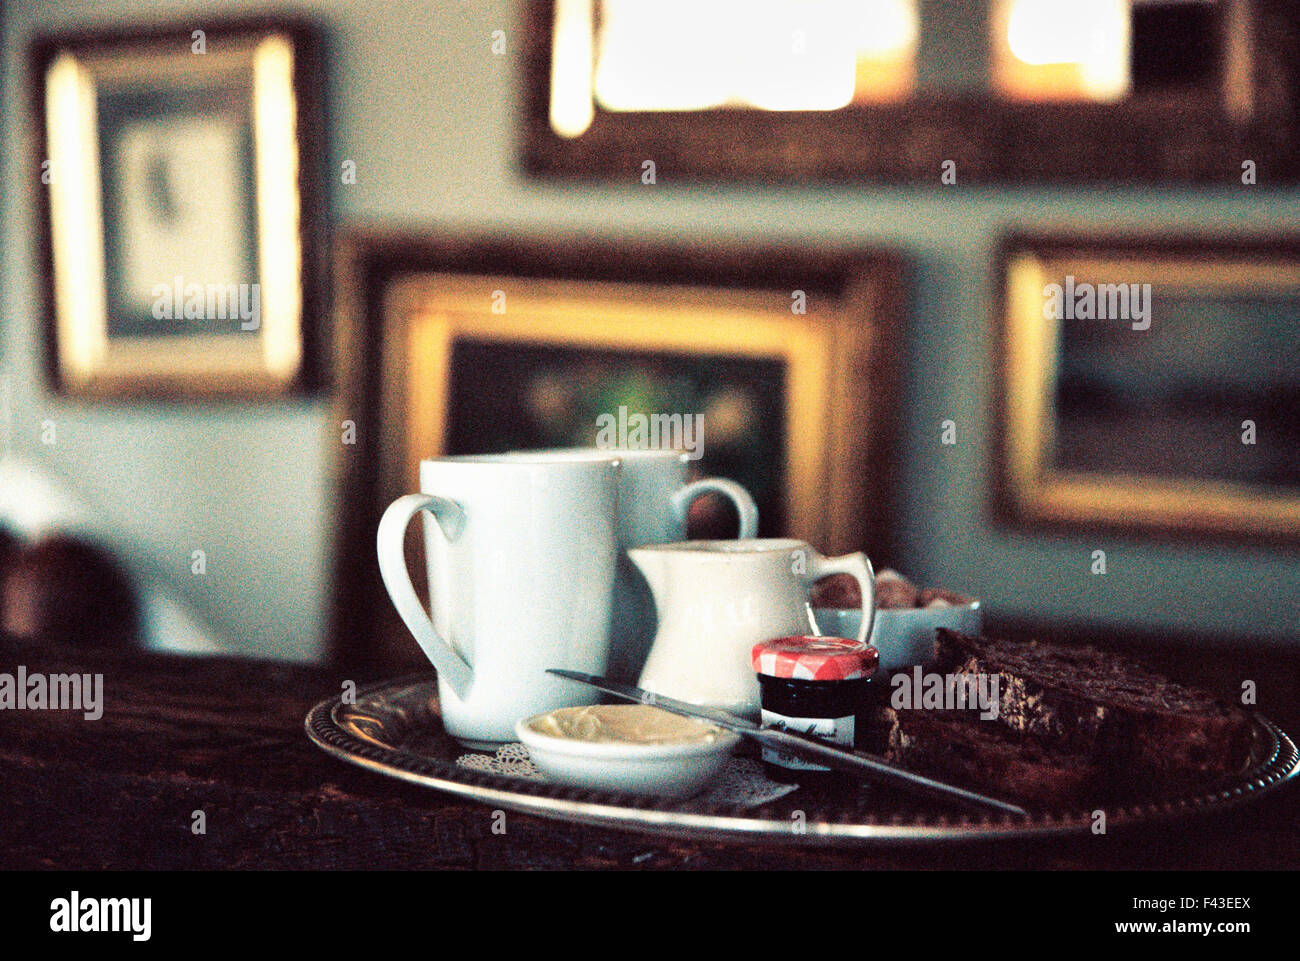 Un edificio storico della fine del XVIII secolo, interno, ora un hotel ed un ristorante. Un vassoio tè su un tavolo in una stanza piena di immagini. Foto Stock